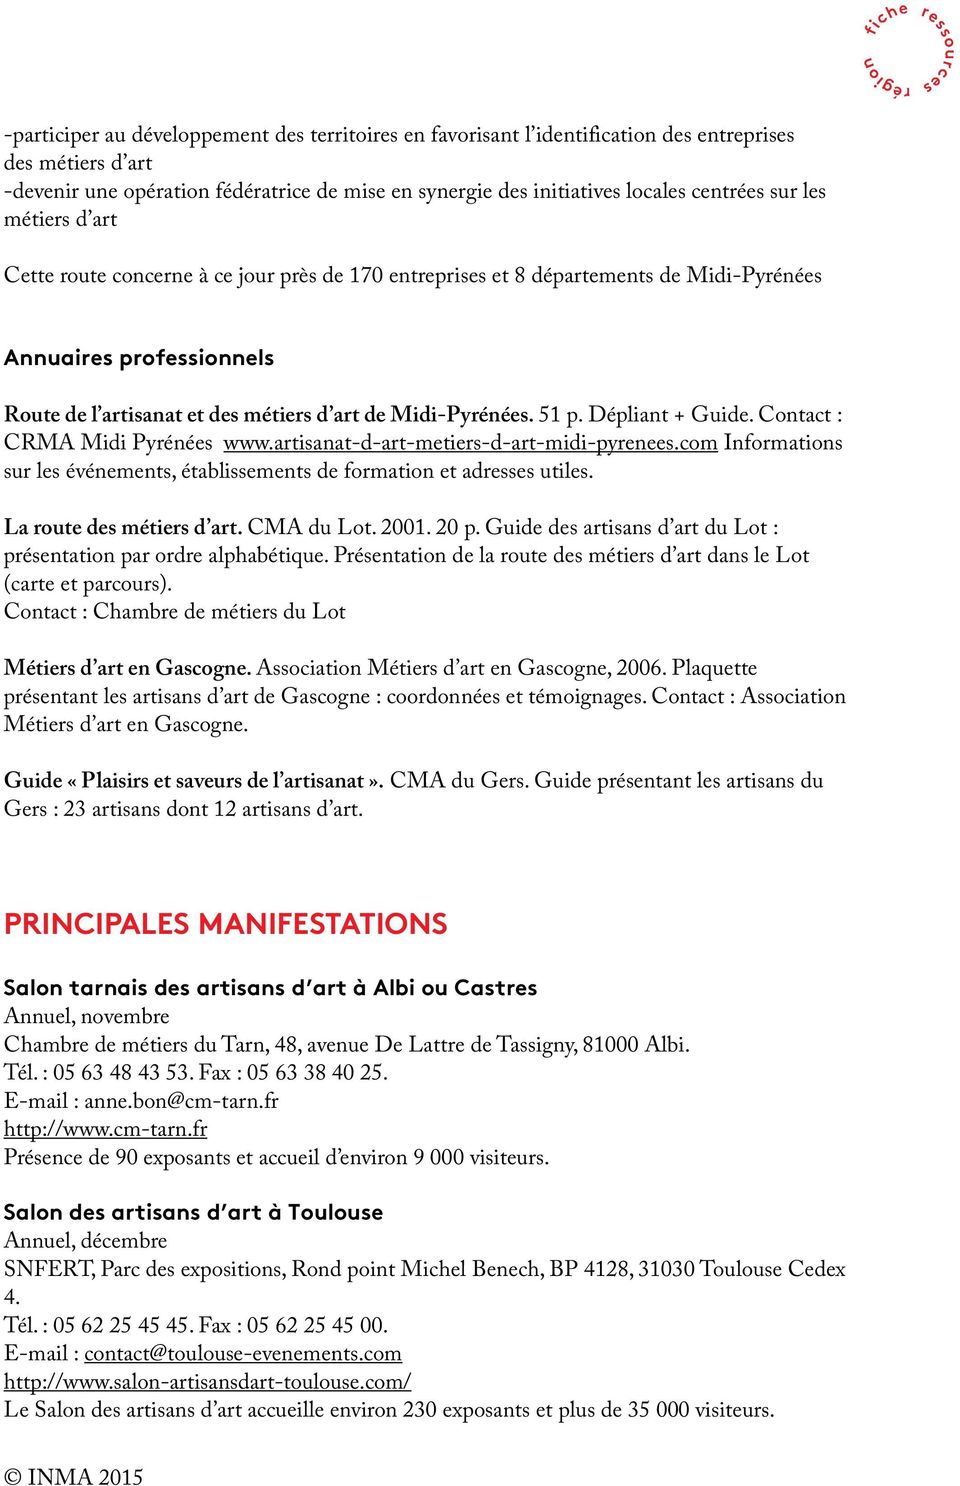 51 p. Dépliant + Guide. Contact : CRMA Midi Pyrénées www.artisanat-d-art-metiers-d-art-midi-pyrenees.com Informations sur les événements, établissements de formation et adresses utiles.